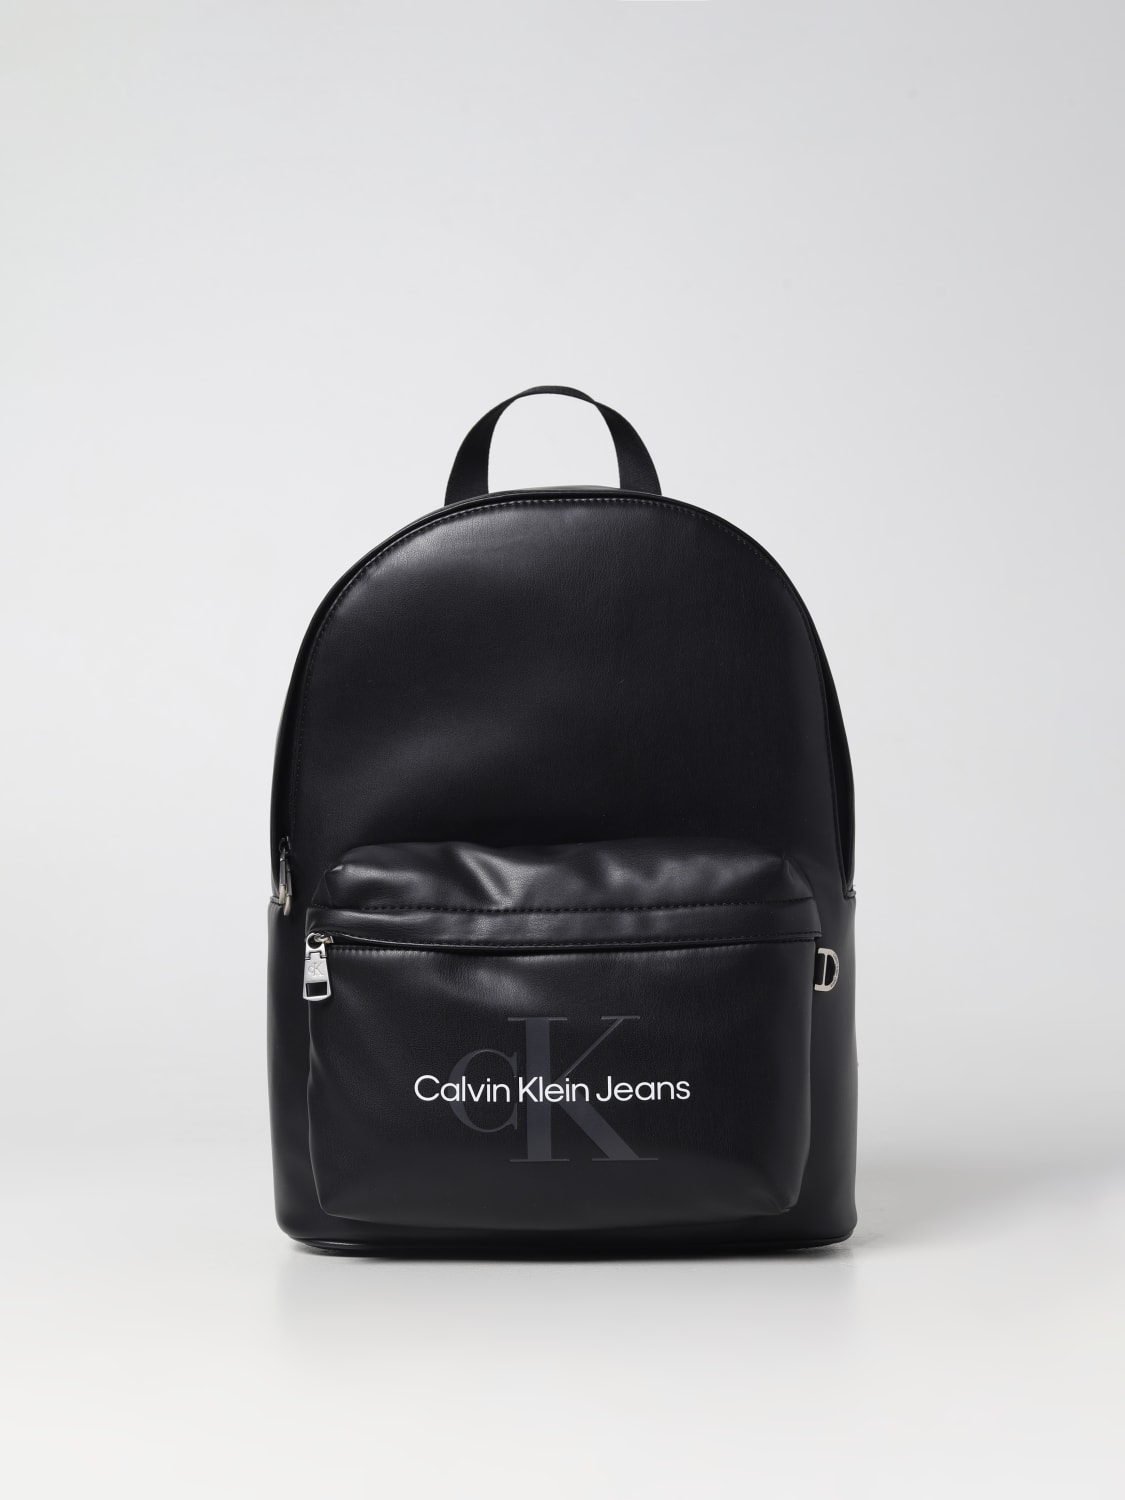 Ontoegankelijk kloon spontaan CALVIN KLEIN JEANS: backpack for man - Black | Calvin Klein Jeans backpack  K50K510394 online on GIGLIO.COM